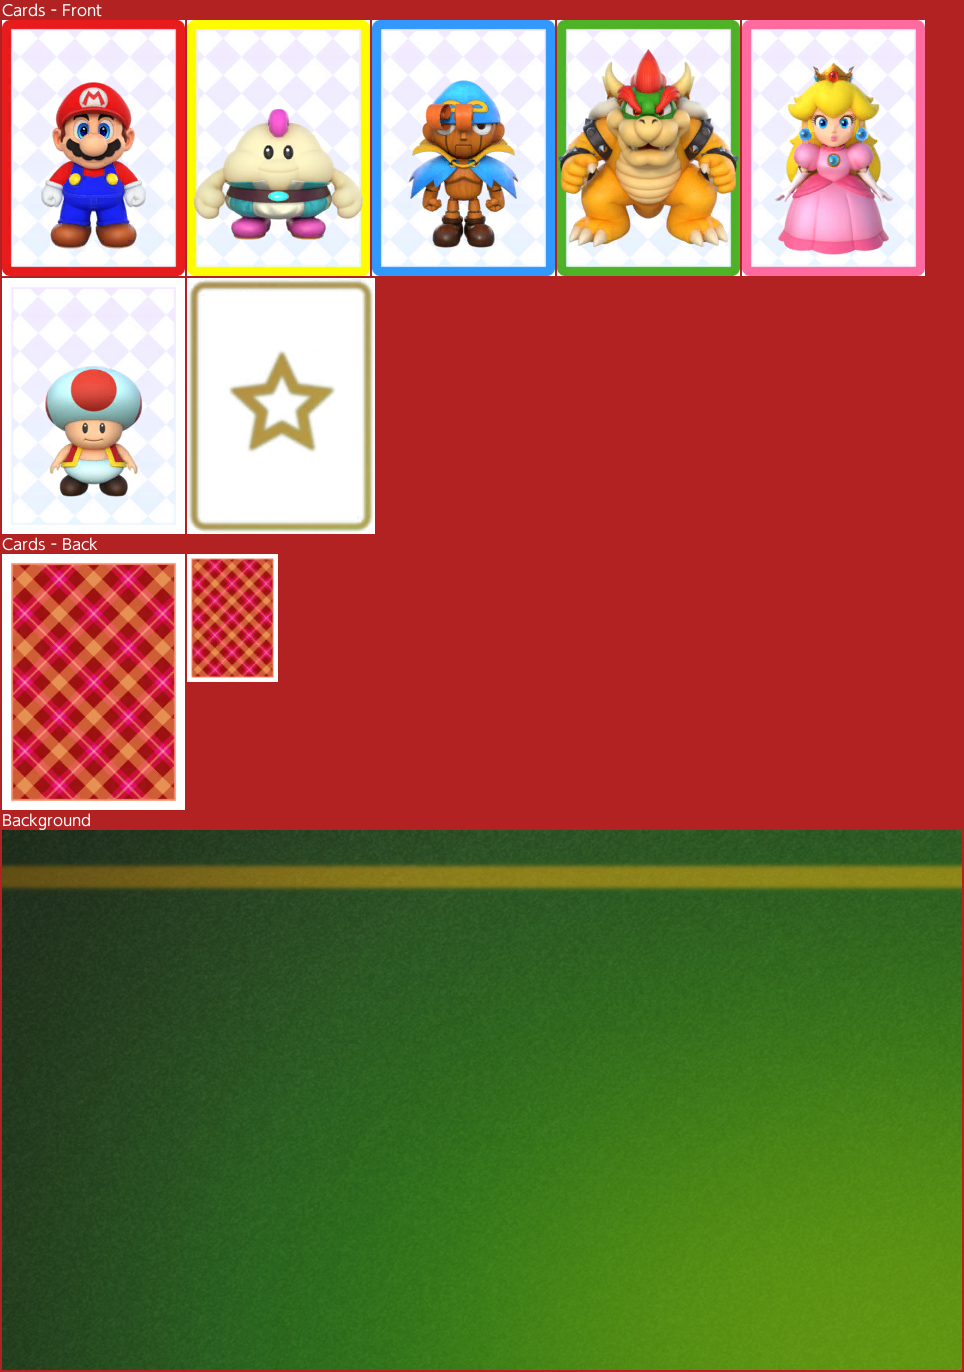 Super Mario RPG - Grate Guy's Casino - Memory Game